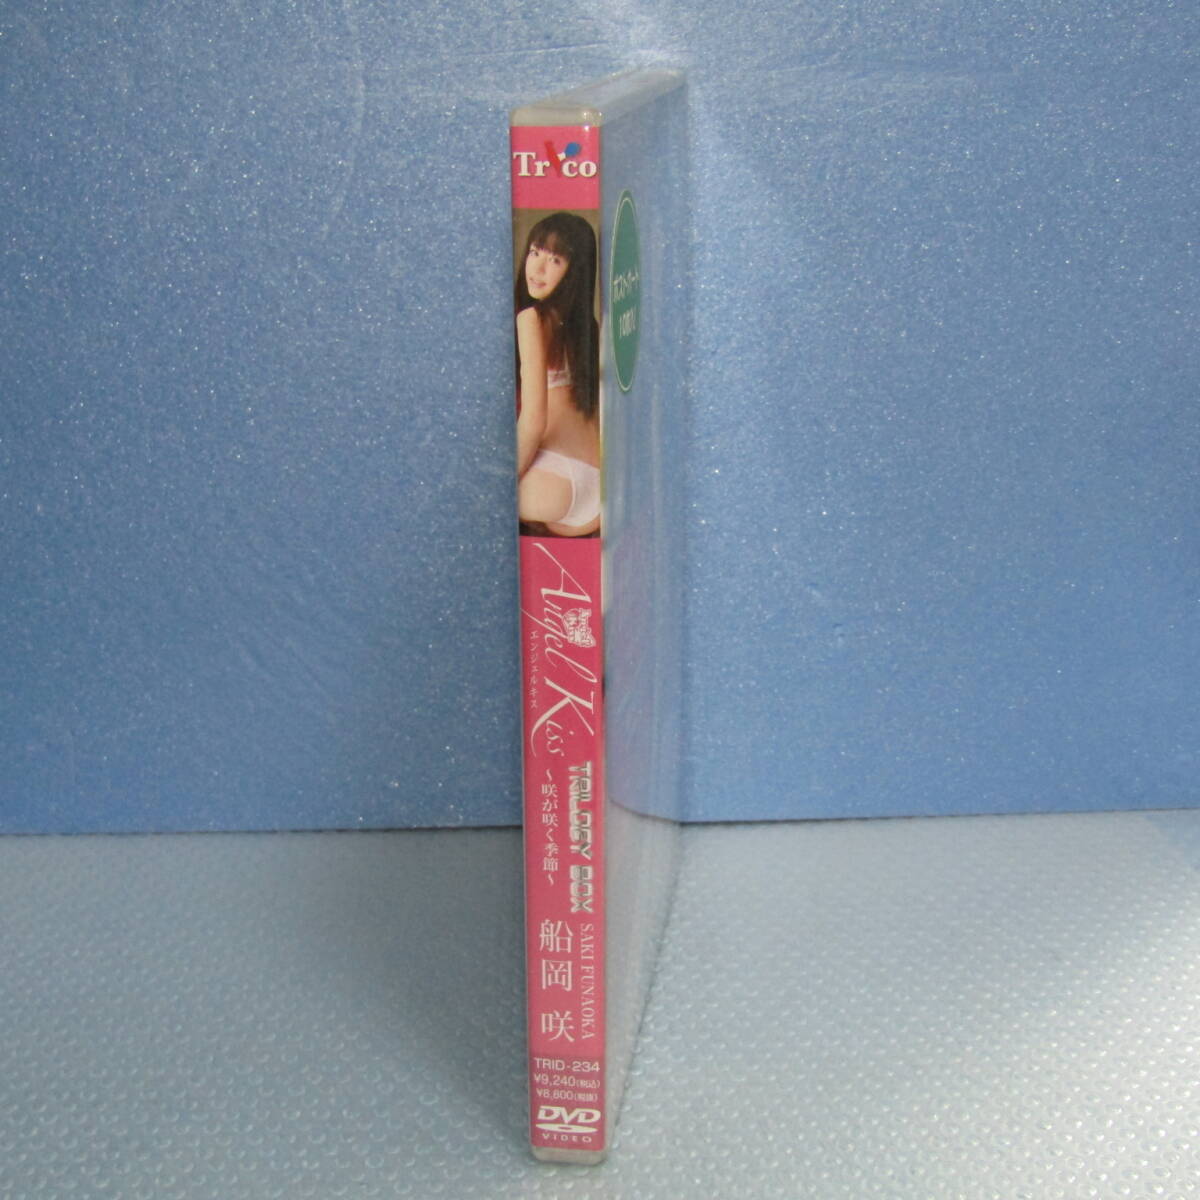 新品DVD「船岡咲 Angel Kiss TRILOGY BOX 〈3枚組〉 エンジェル・キス 咲き誇る卒業ファンタジー 1・2 咲っちょのお手伝い」未開封・新品_画像2